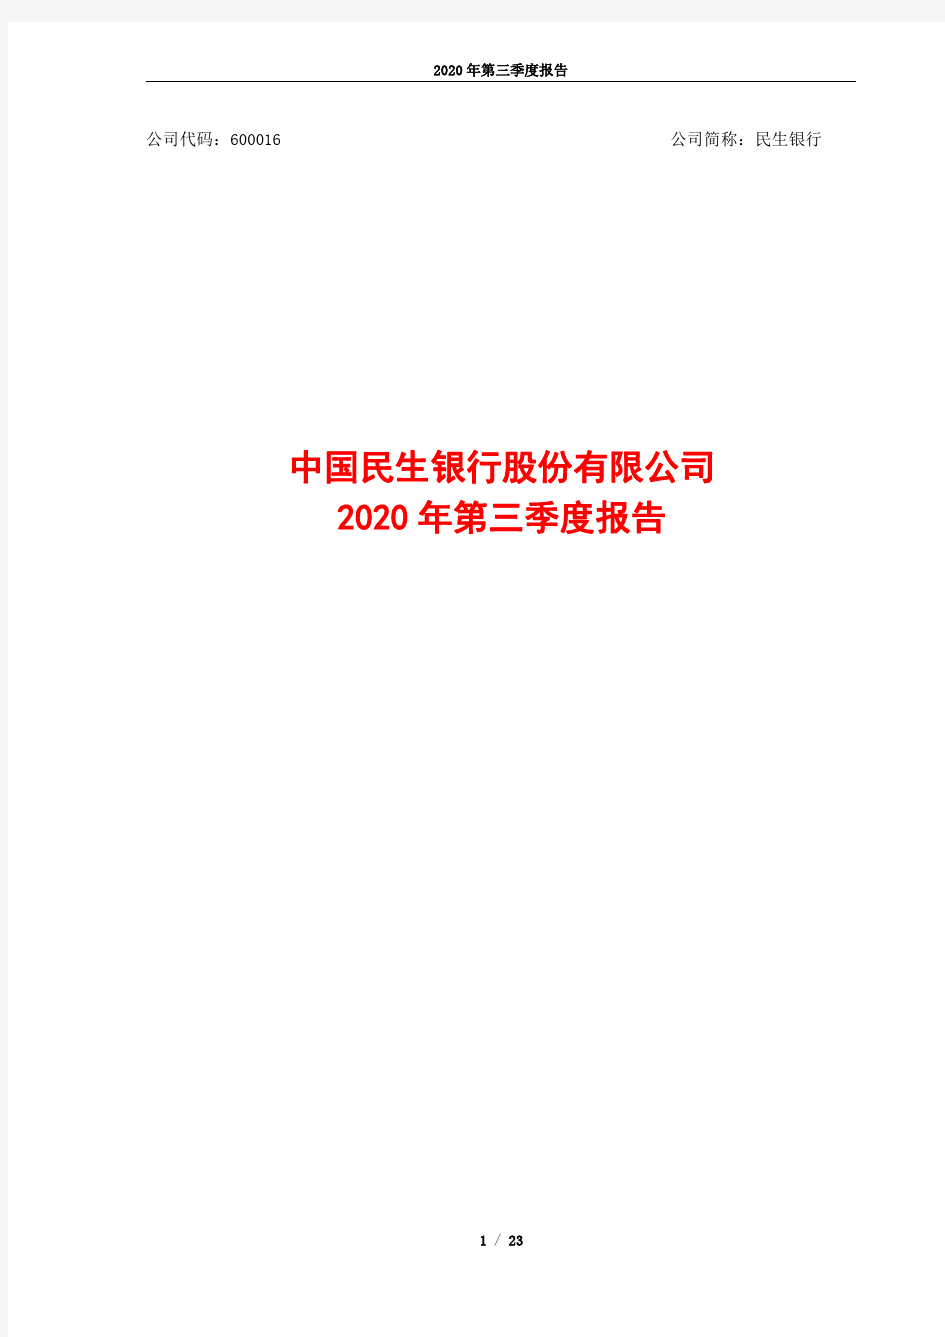 600016中国民生银行股份有限公司2020年第三季度报告(全文)